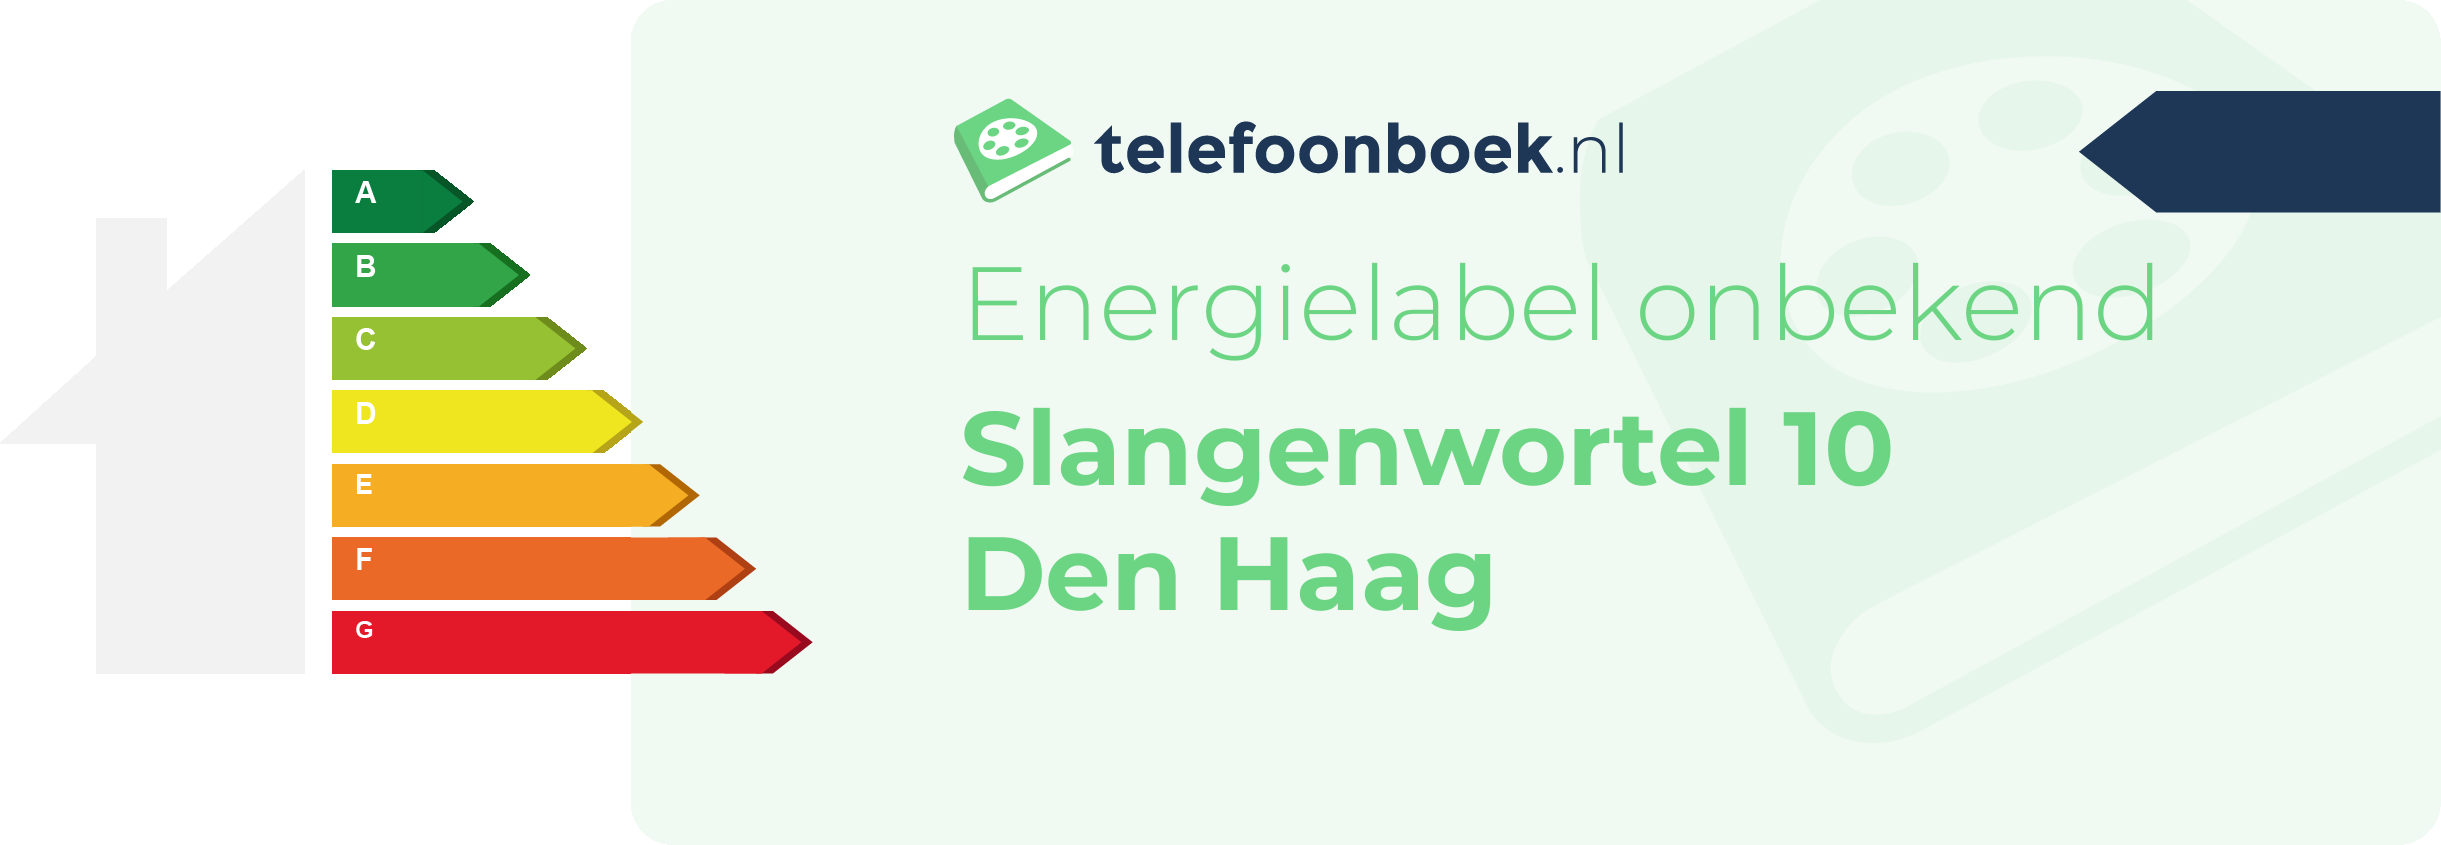 Energielabel Slangenwortel 10 Den Haag